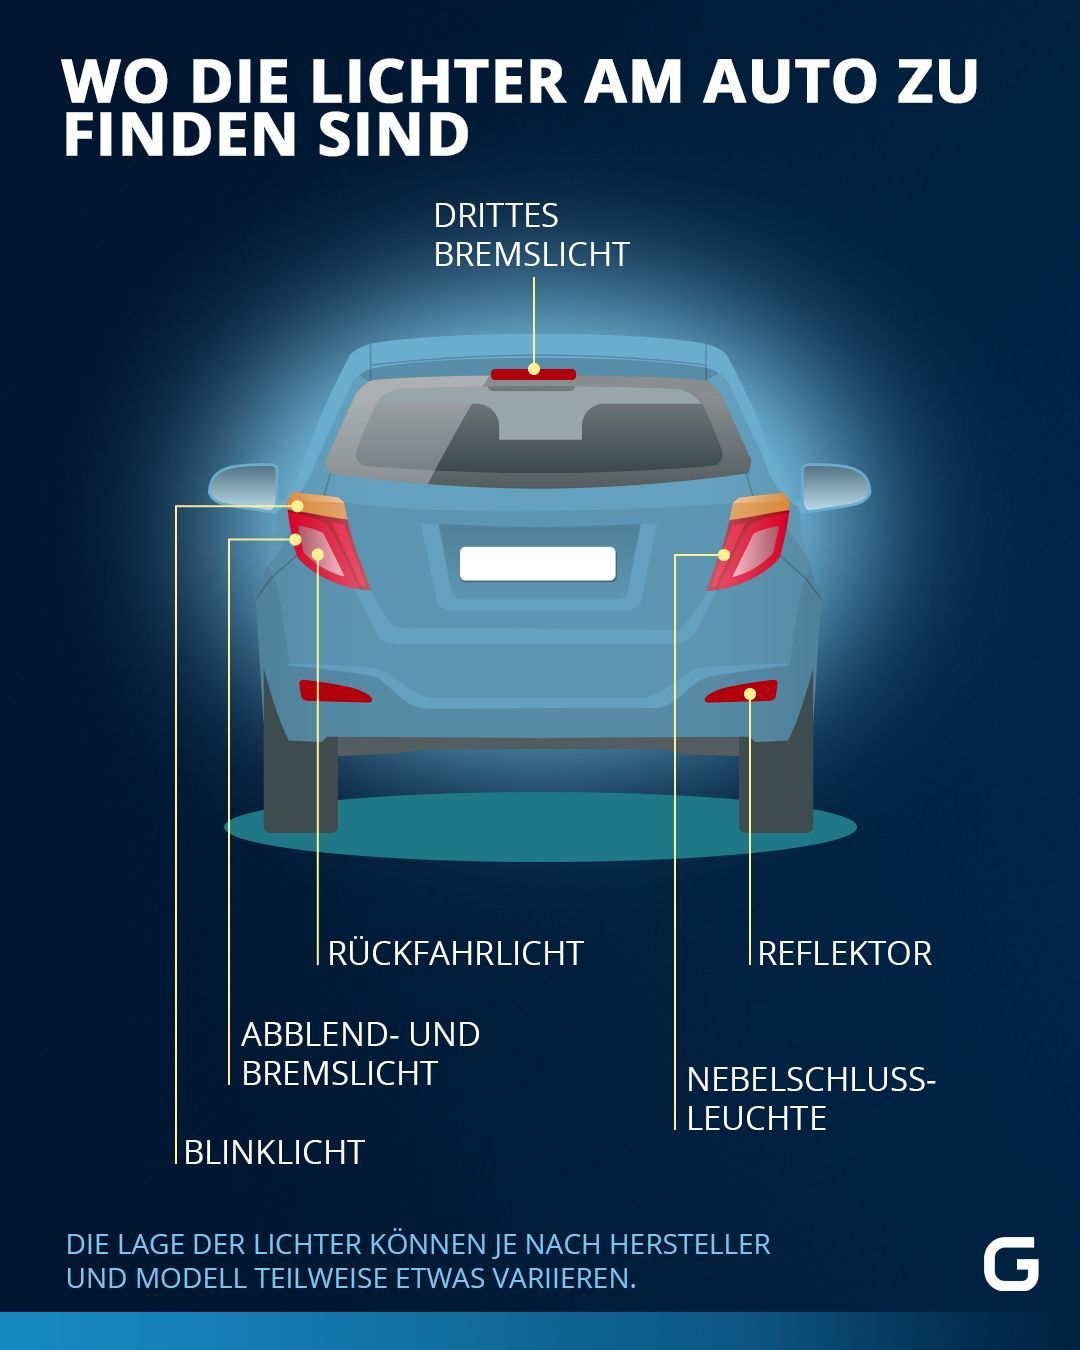 Lichter am Auto: Wann du die Beleuchtung nutzen solltest